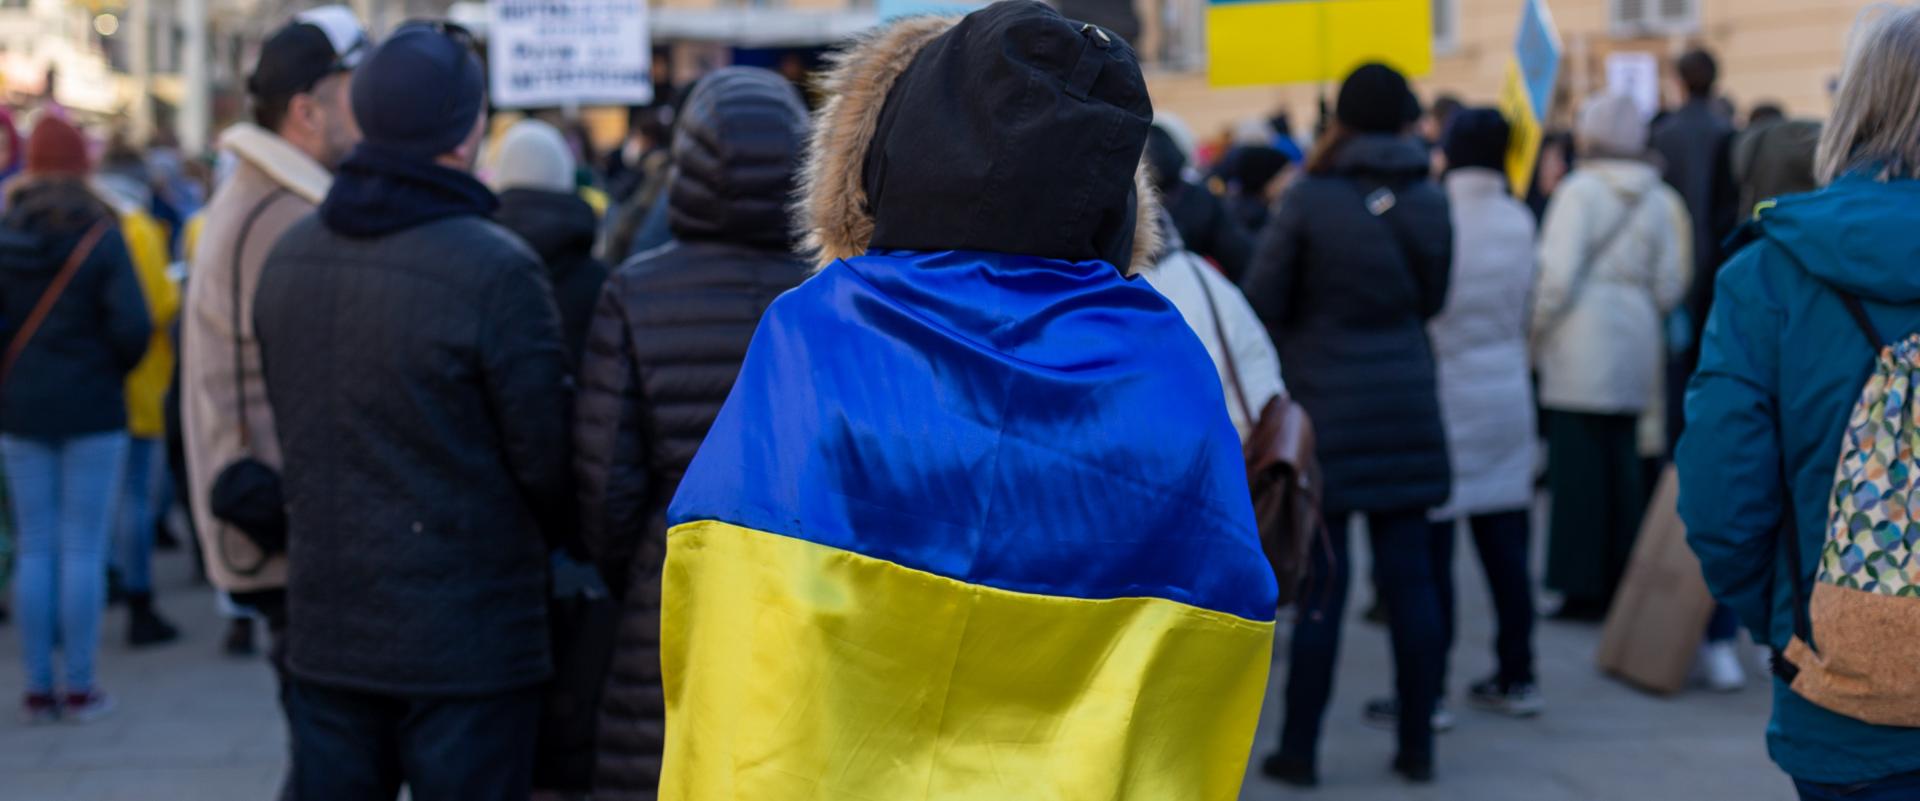 Wojna na Ukrainie - konsumenci nie mówią nie reklamie, ale doceniają działania pomocowe marek